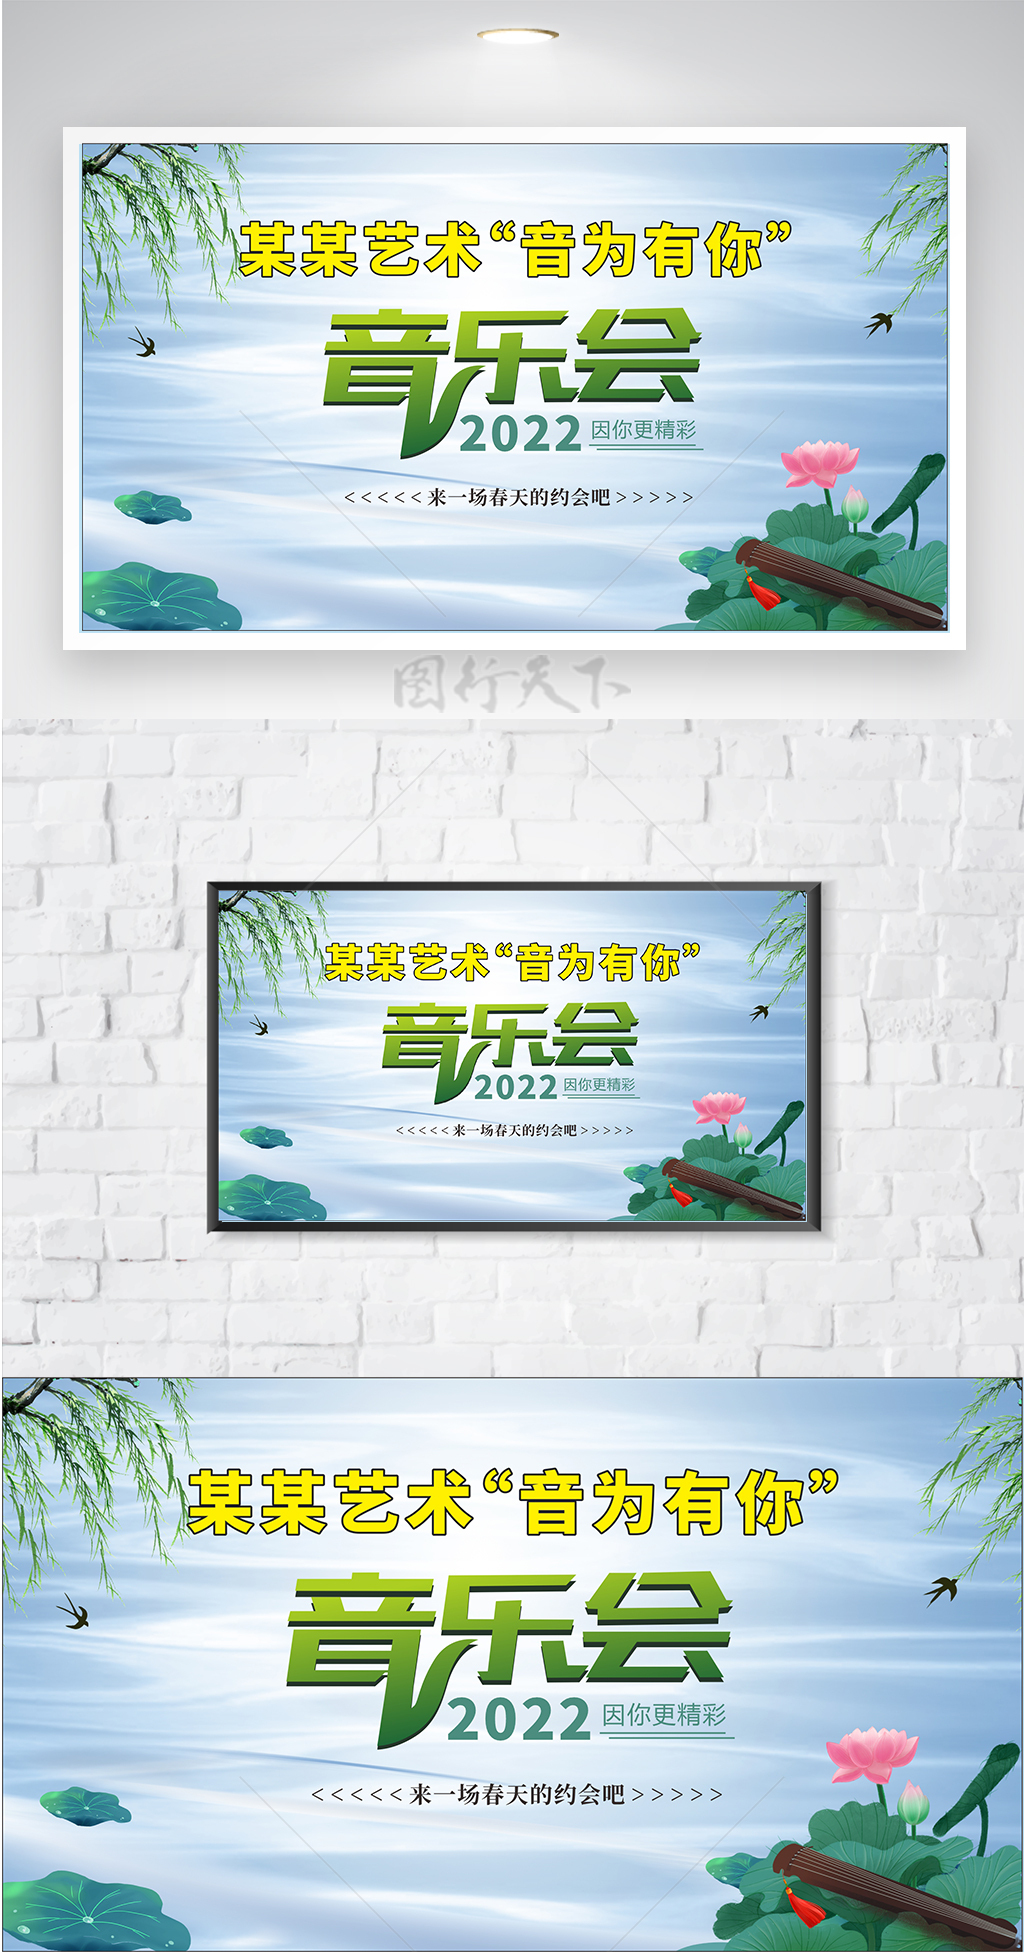 小清新中国风校园艺术节音乐会海报展板